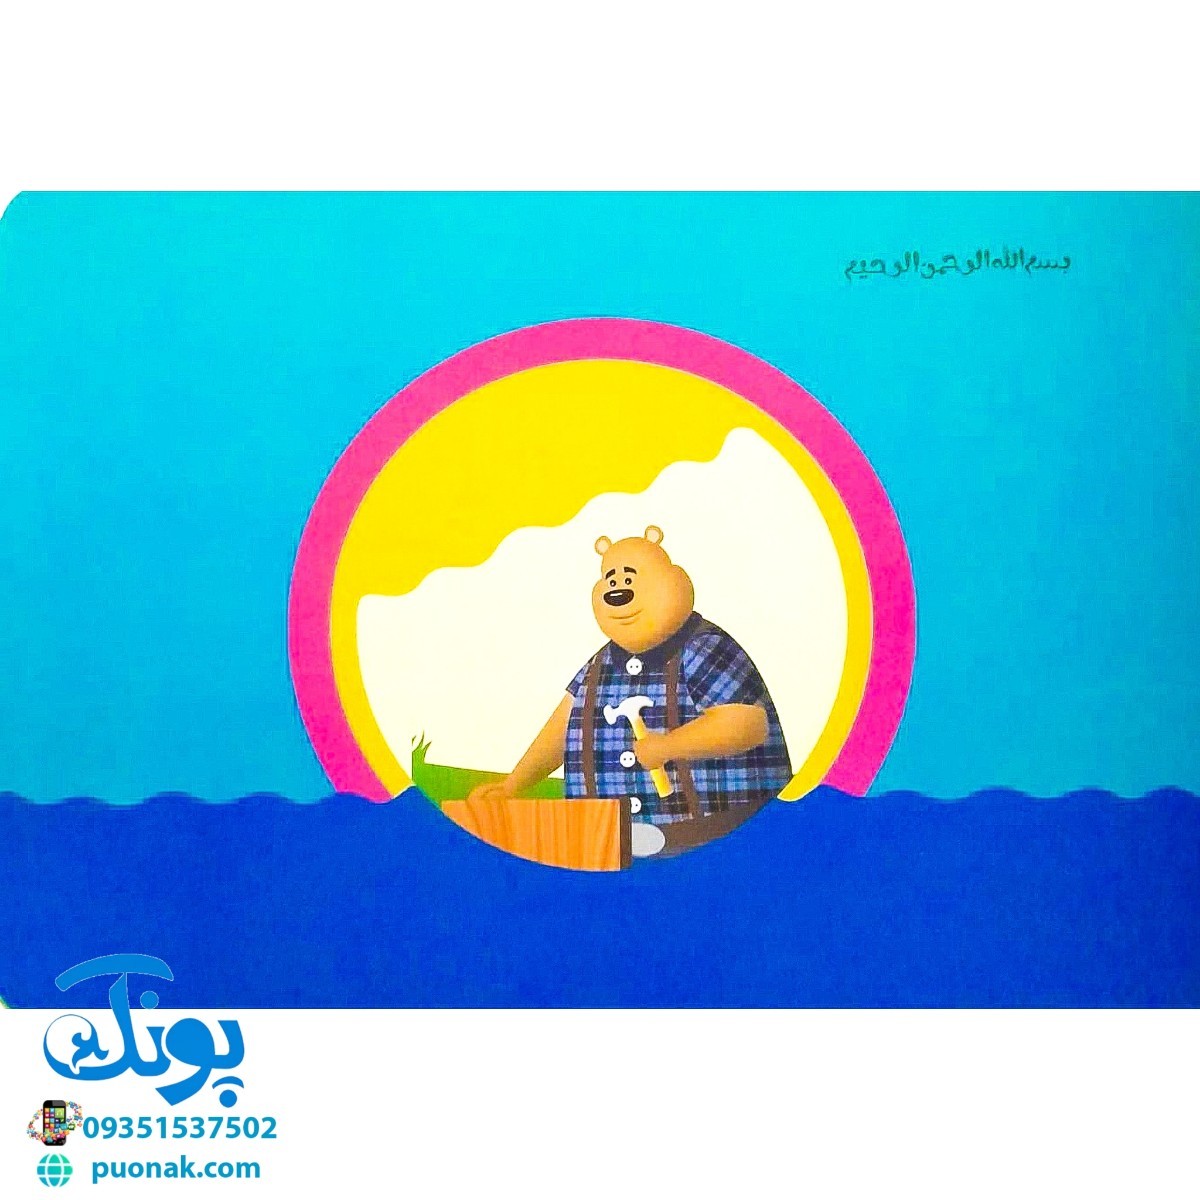 کتاب تصویری خرس مهربان (کتاب های بی نوشته وردلس، آموزش و پرورش خلاقیت در کودکان)